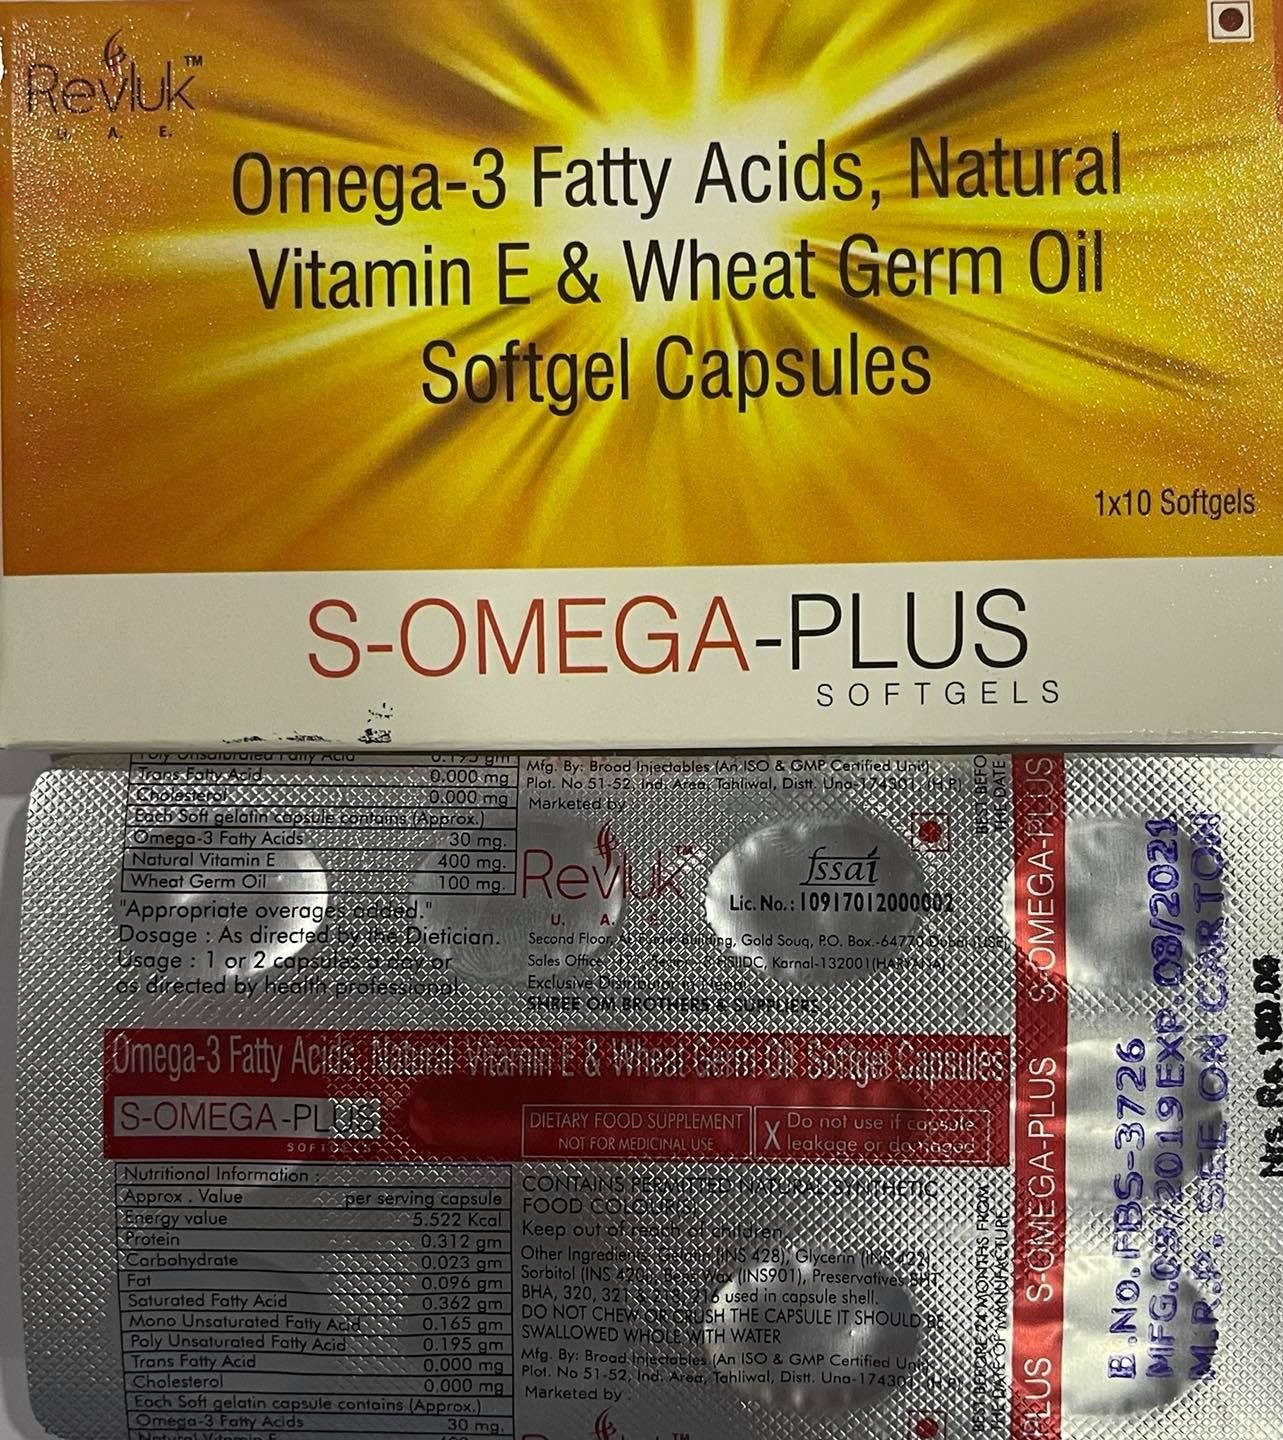 S-omega-plus Softgels